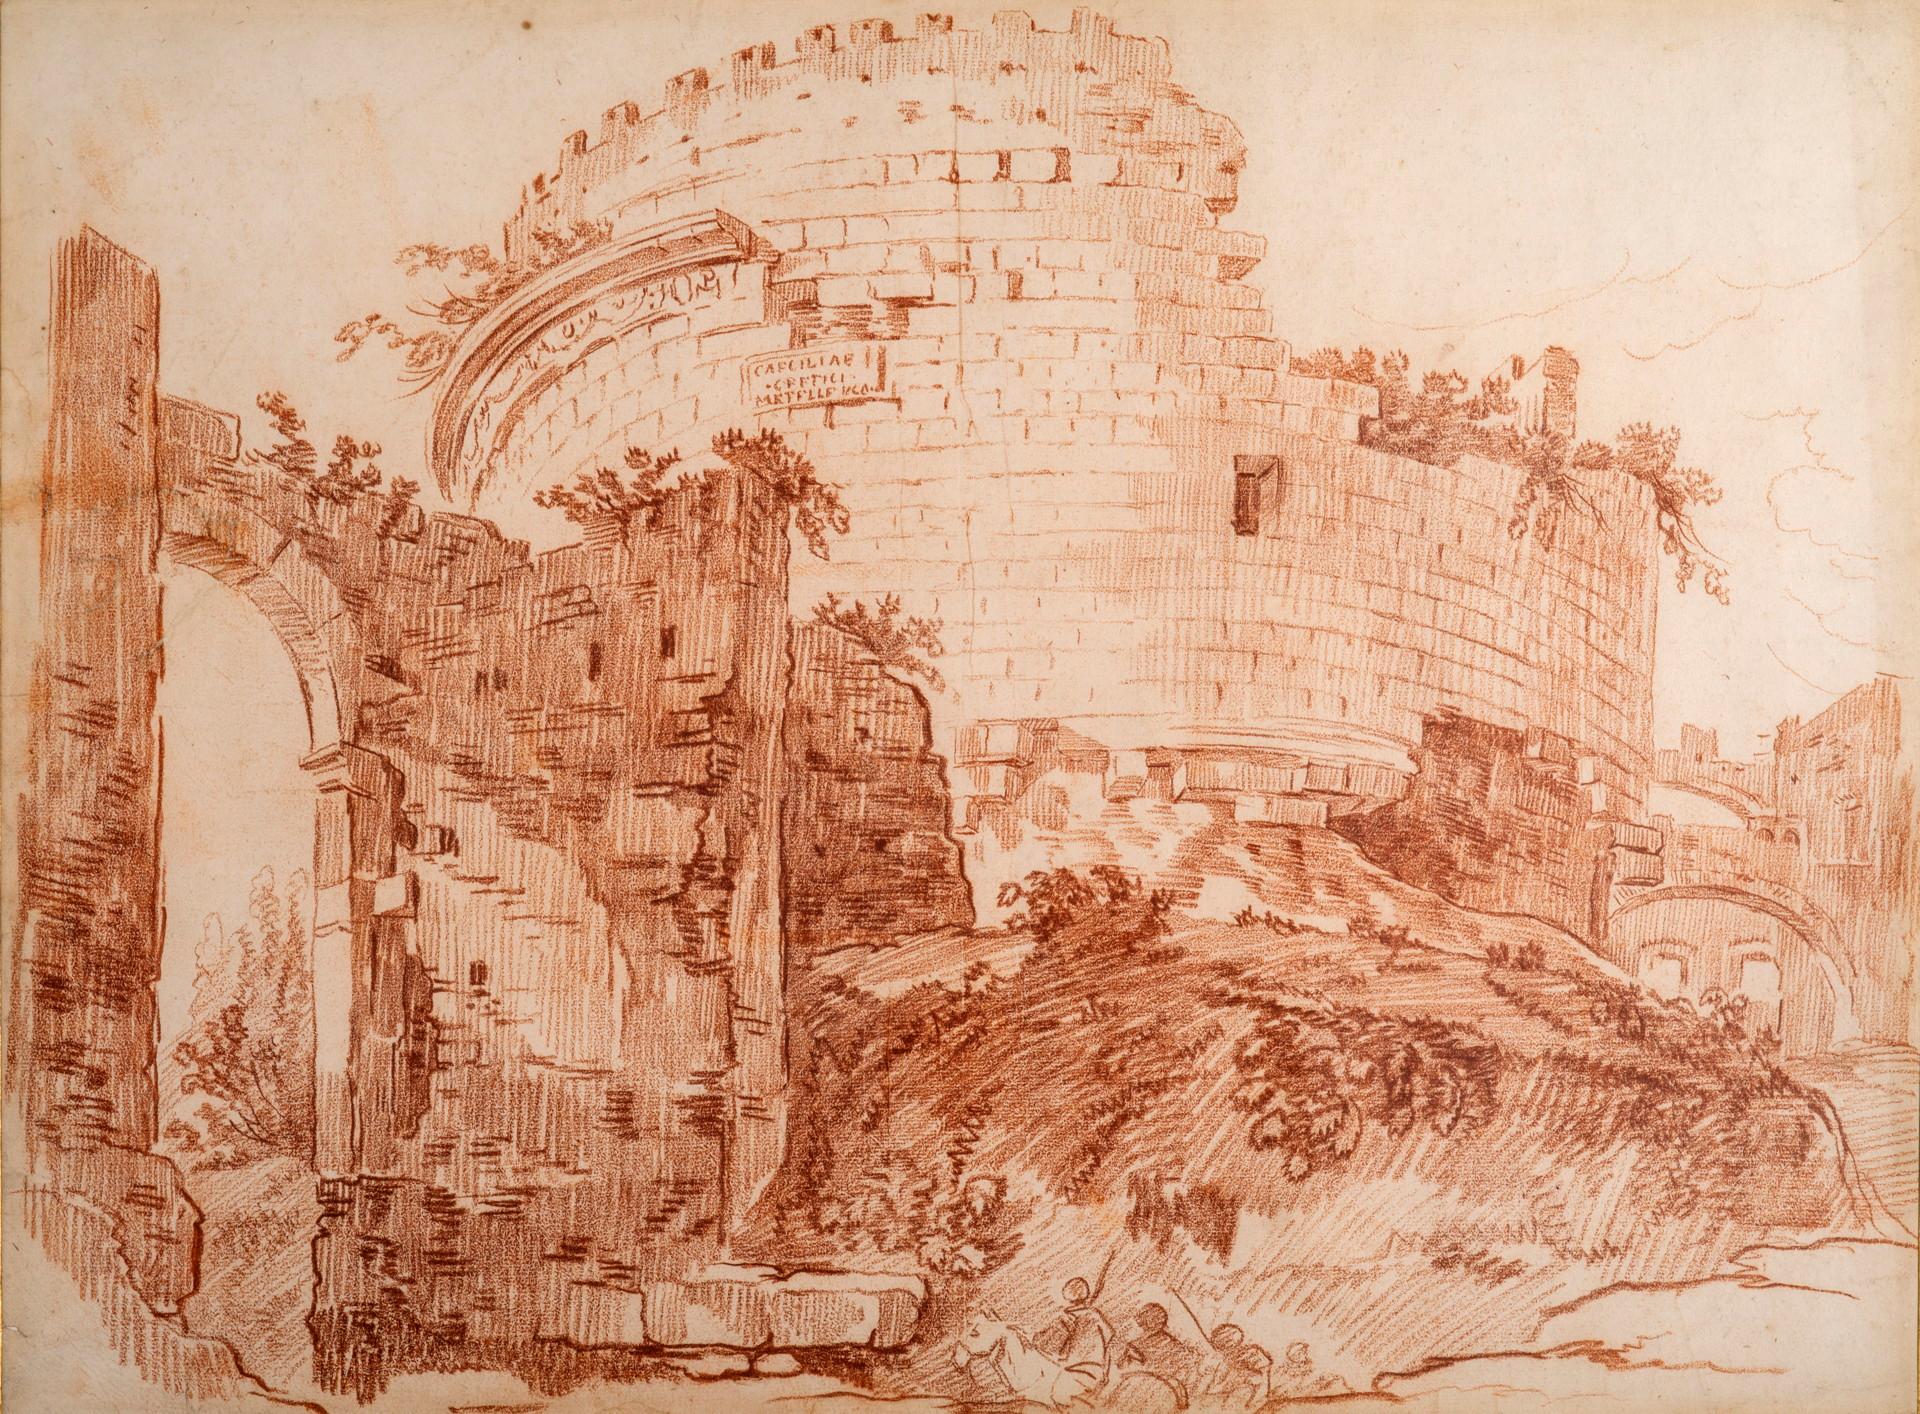 Das Grabmal der Caecilia Metella, Rom.
Rote Kreide auf Papier.
Provenienz: H. Shickman Gallery, New York (D1311). Label verso, wo Hubert Robert gegeben.

Diese prächtige Zeichnung ist eine zeitgenössische und direkte Kopie einer Zeichnung, die